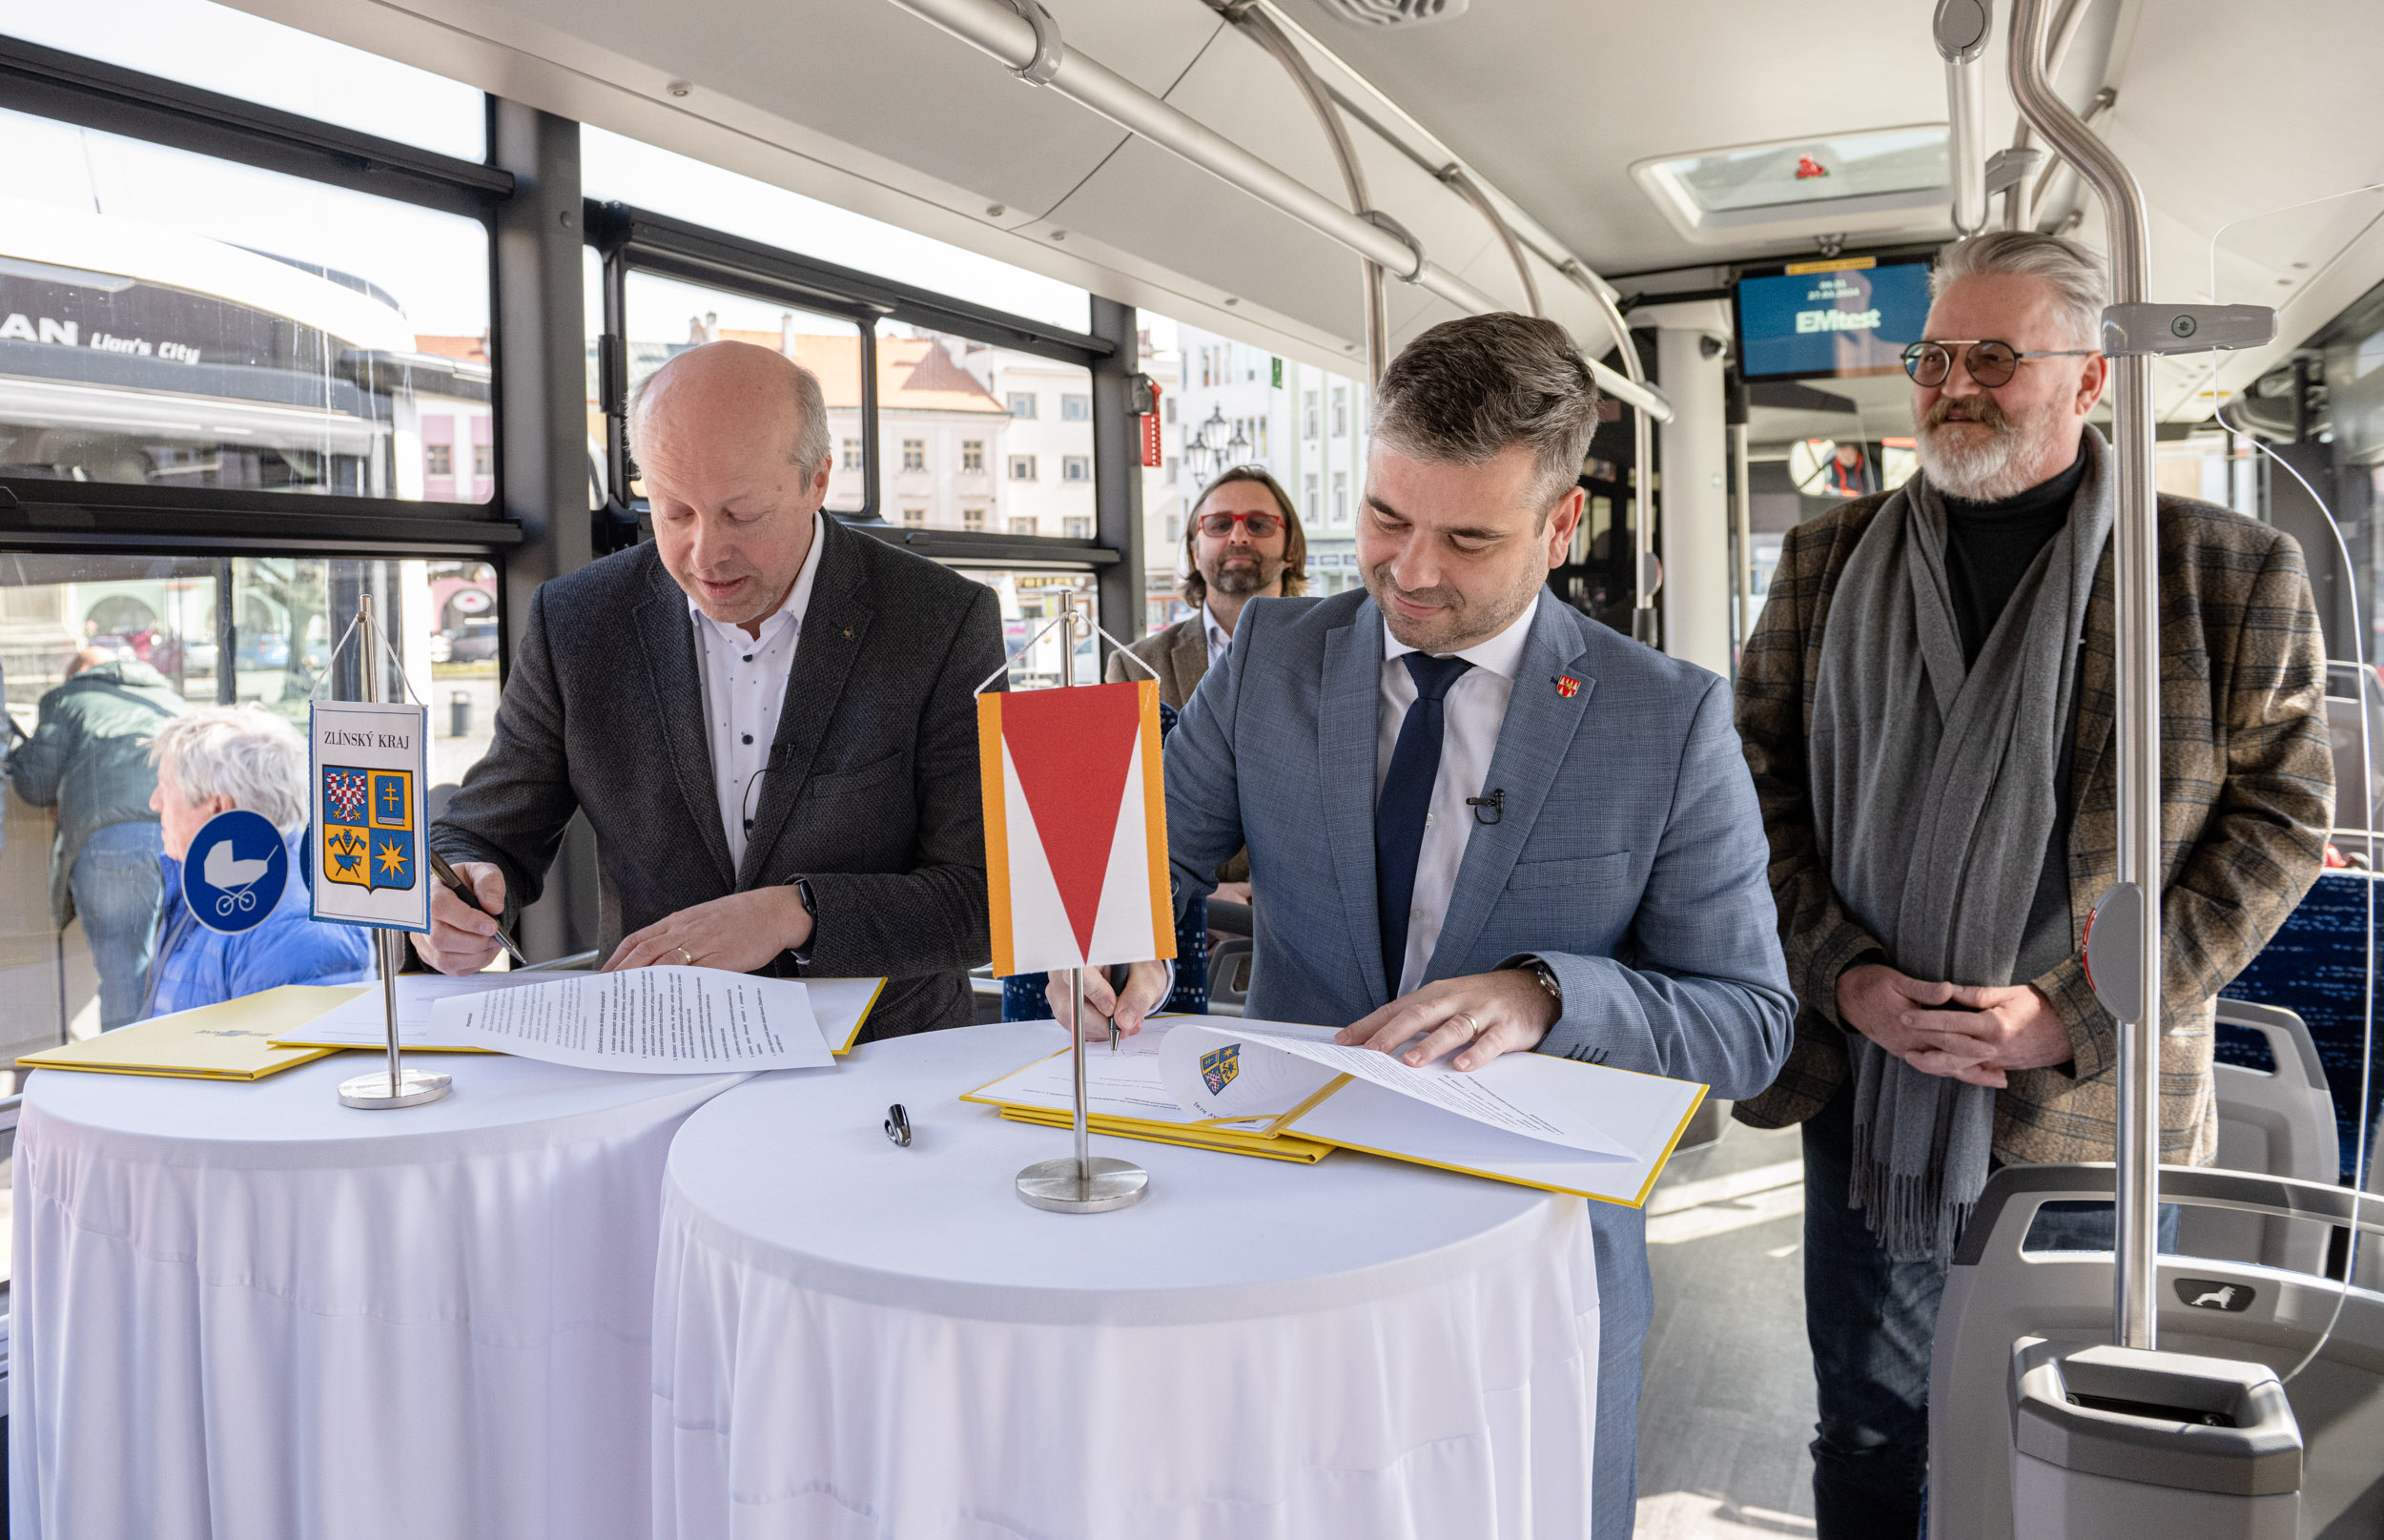 Náměstek hejtmana Radek Doležel (vlevo) a starosta Kroměříže Tomáš Opatrný podepisují deklaraci.